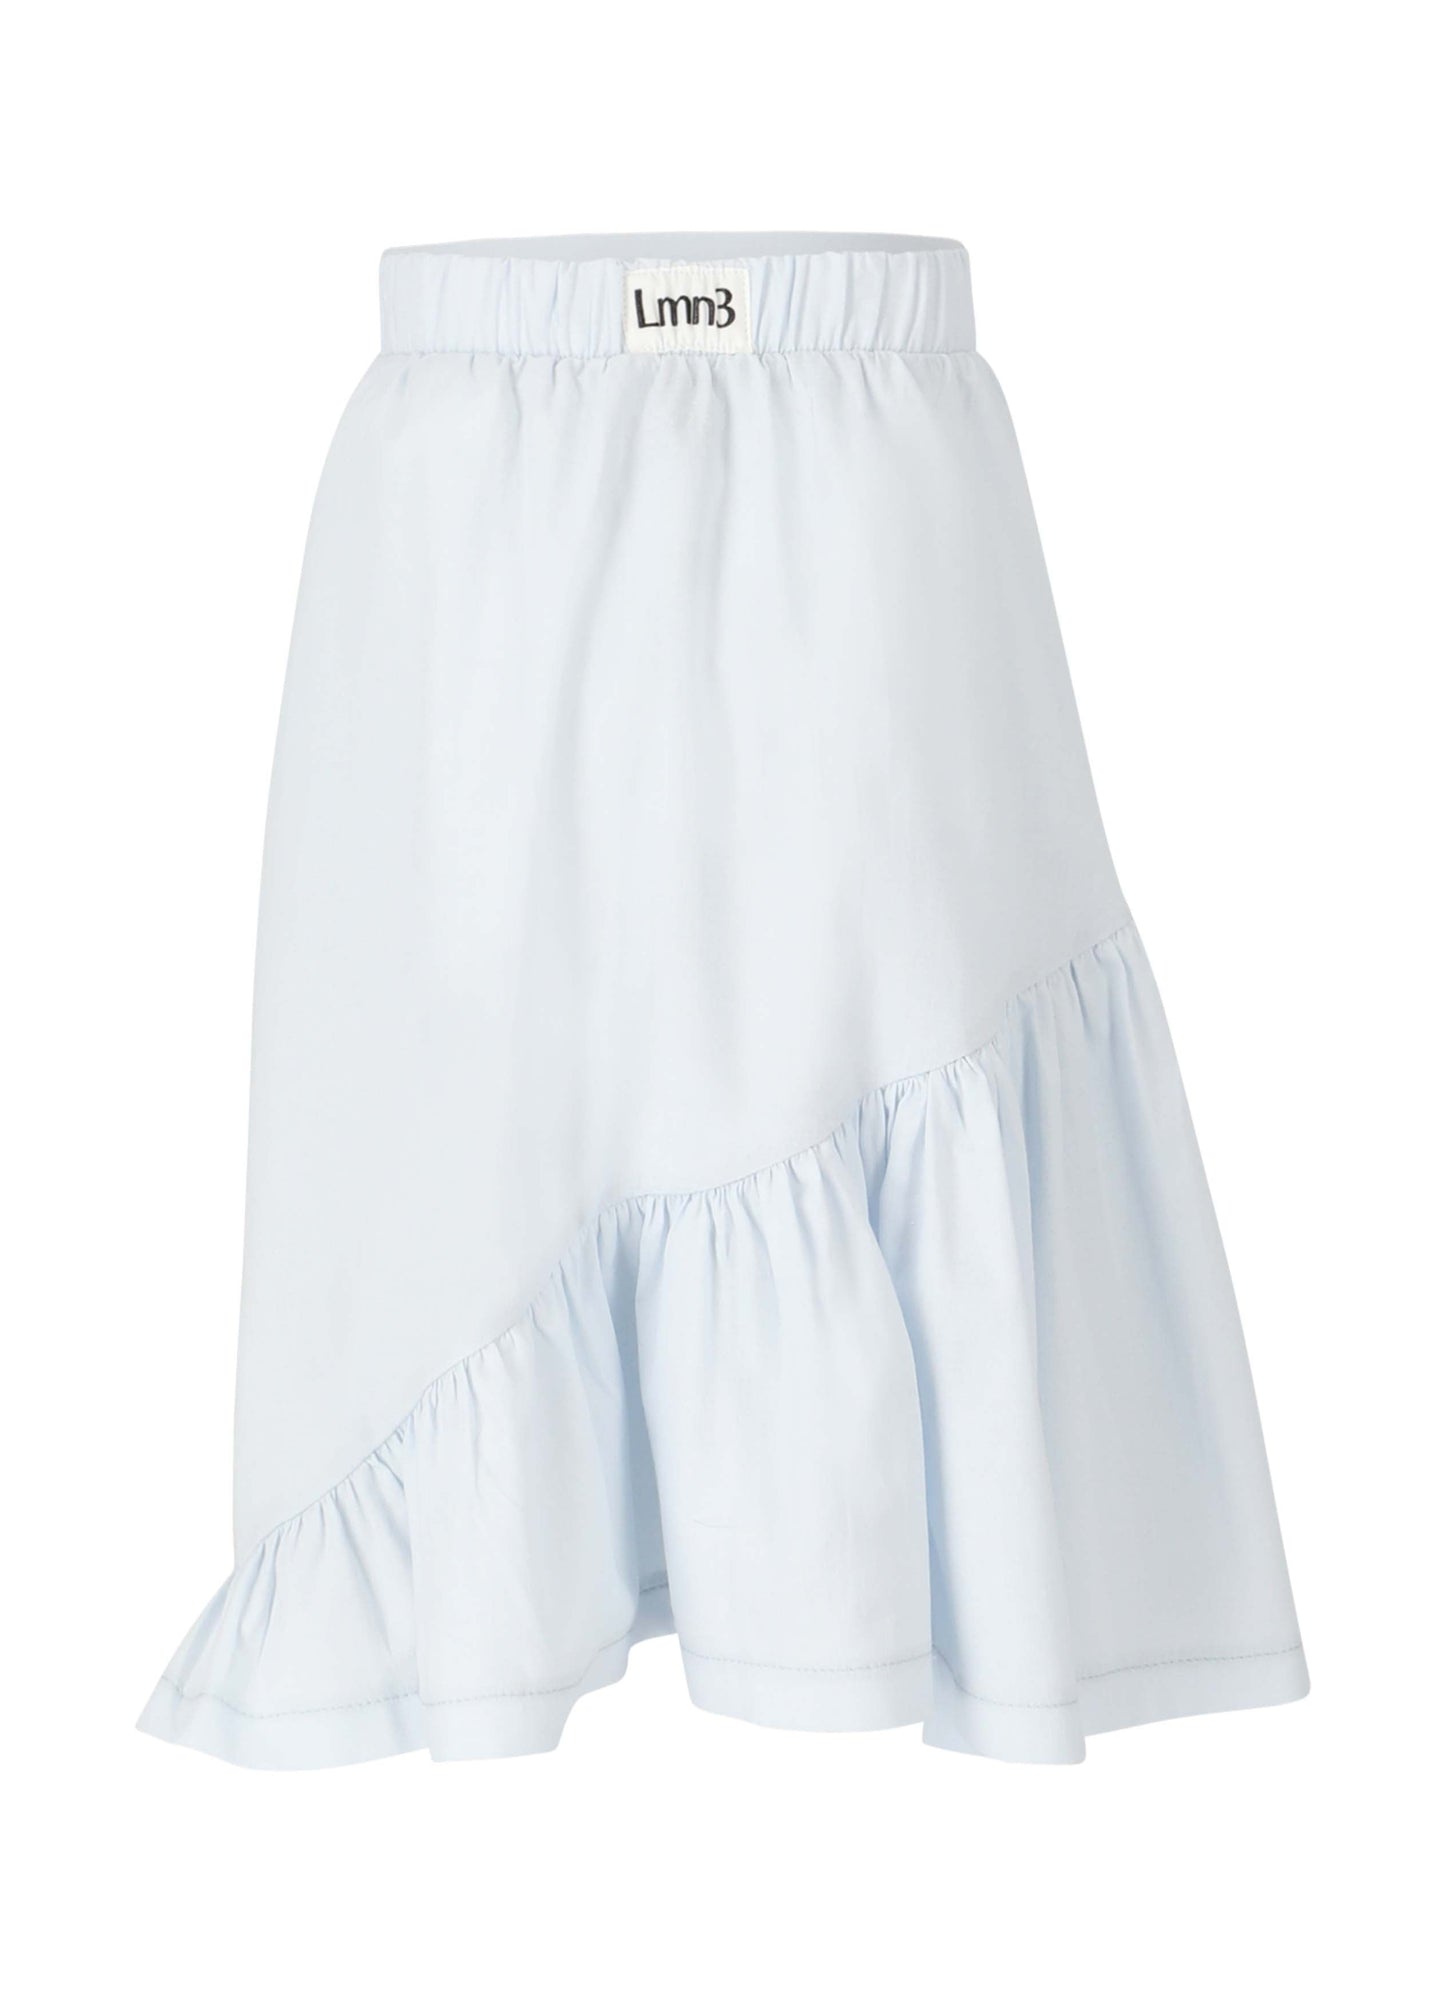 Skirt No. 7 - Celeste Skirts LMN3 